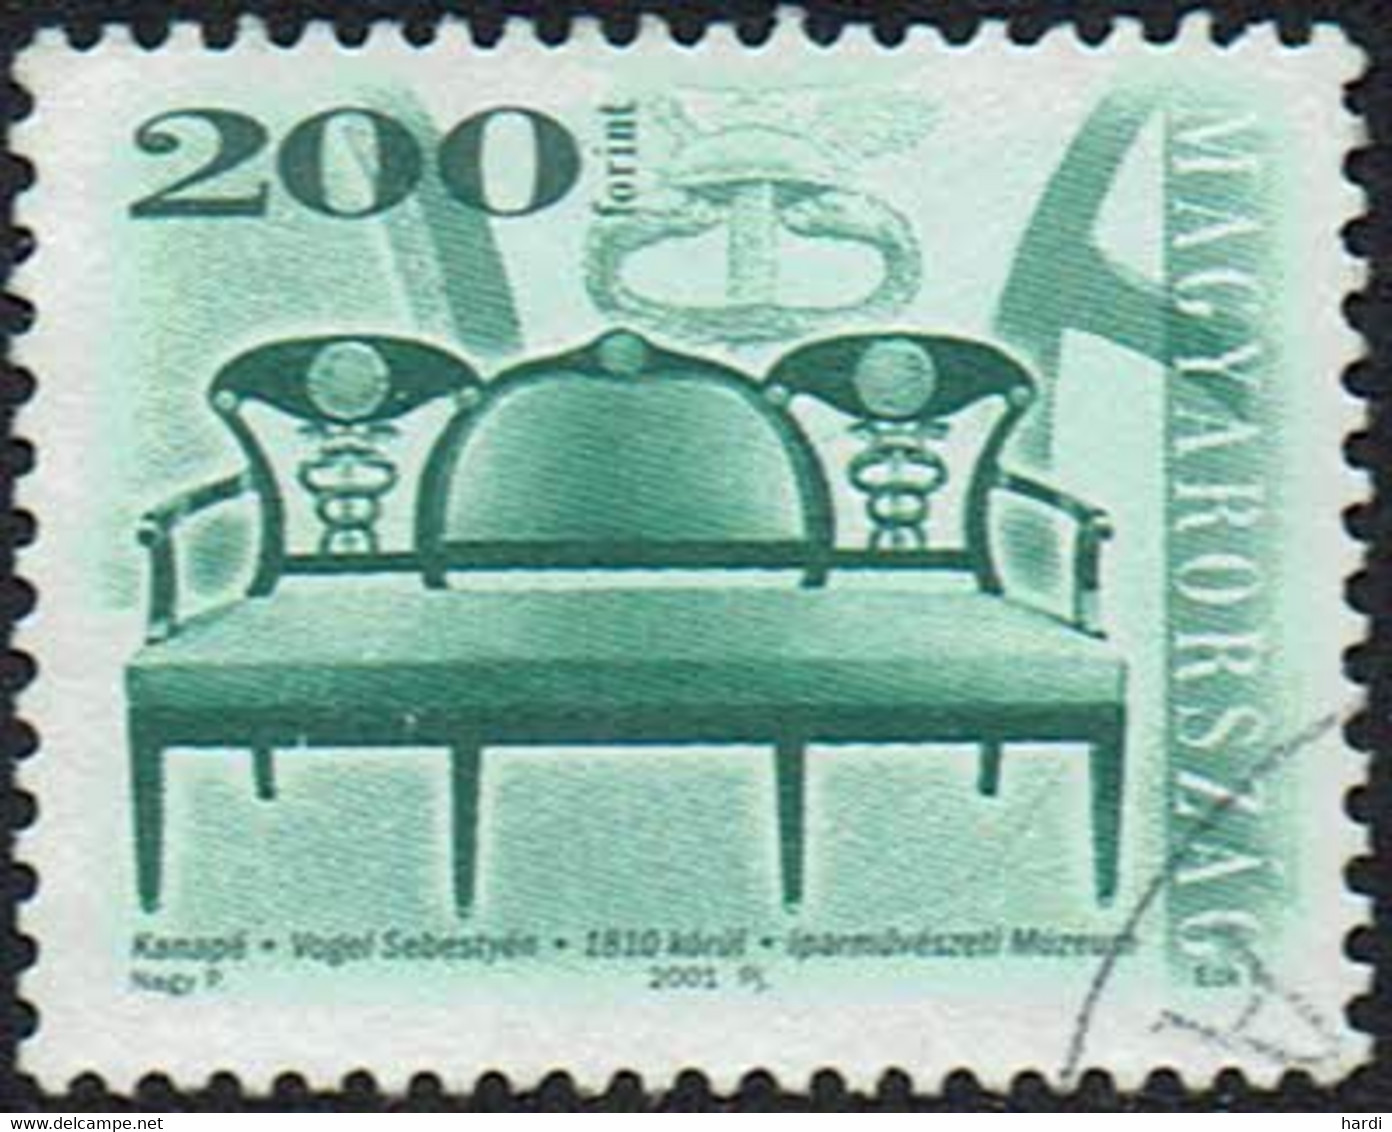 Ungarn 2001, MiNr 4649, Gestempelt - Usati